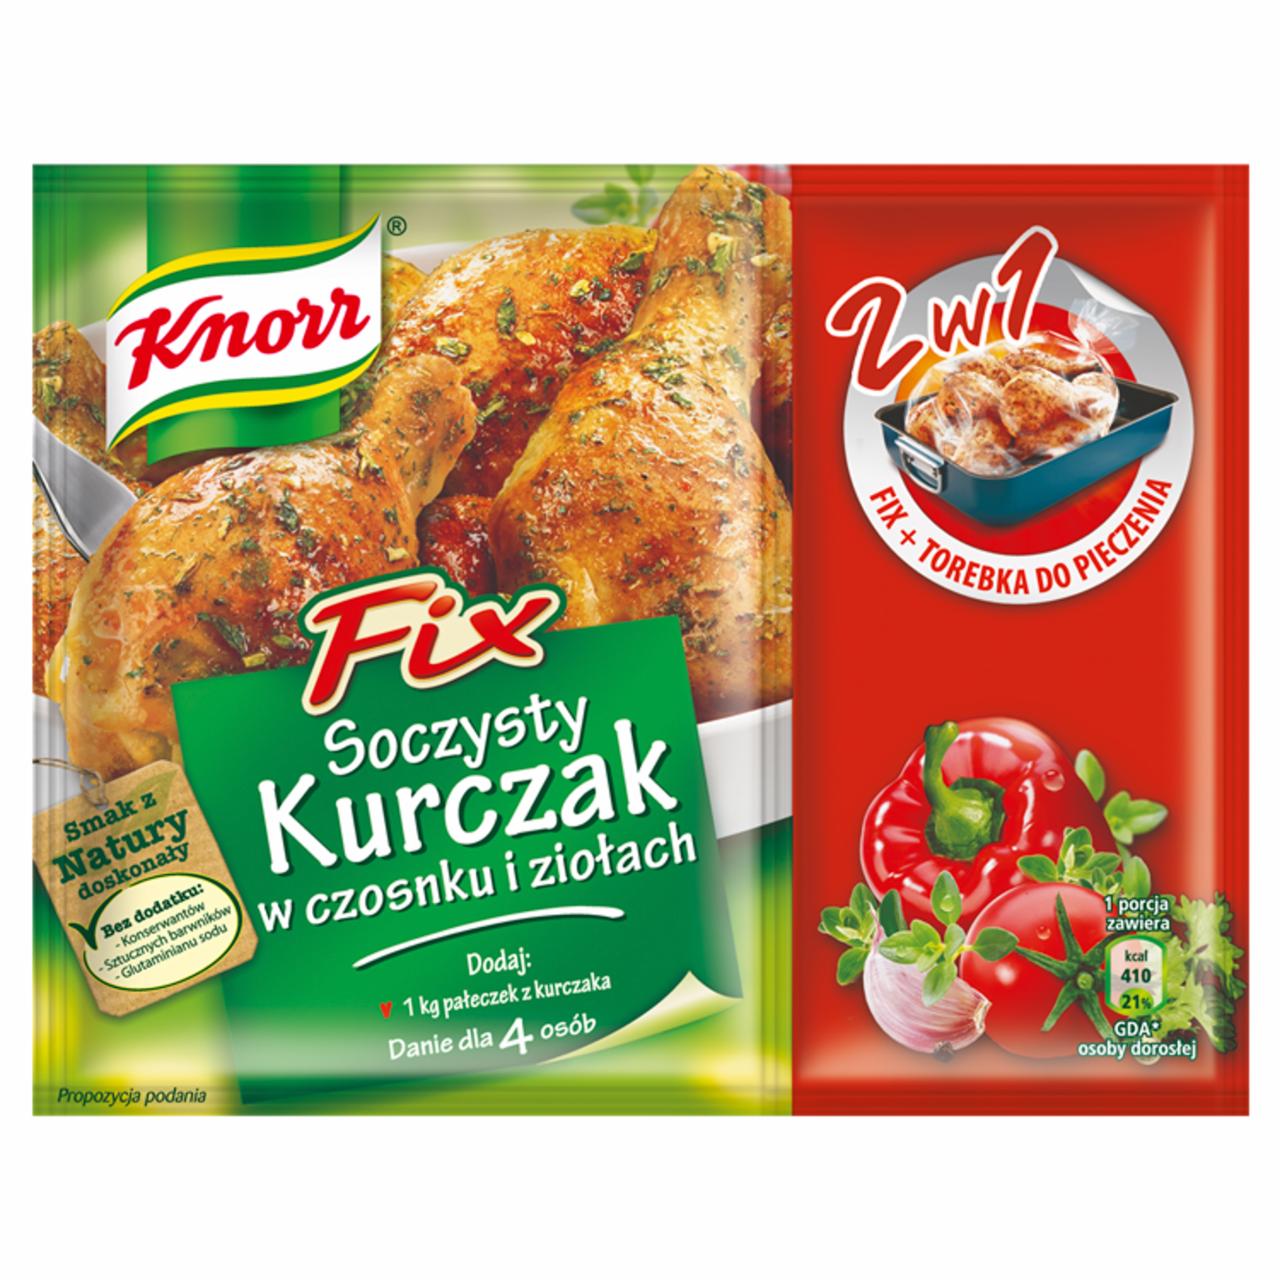 Zdjęcia - Knorr Fix Soczysty kurczak w czosnku i ziołach 25 g